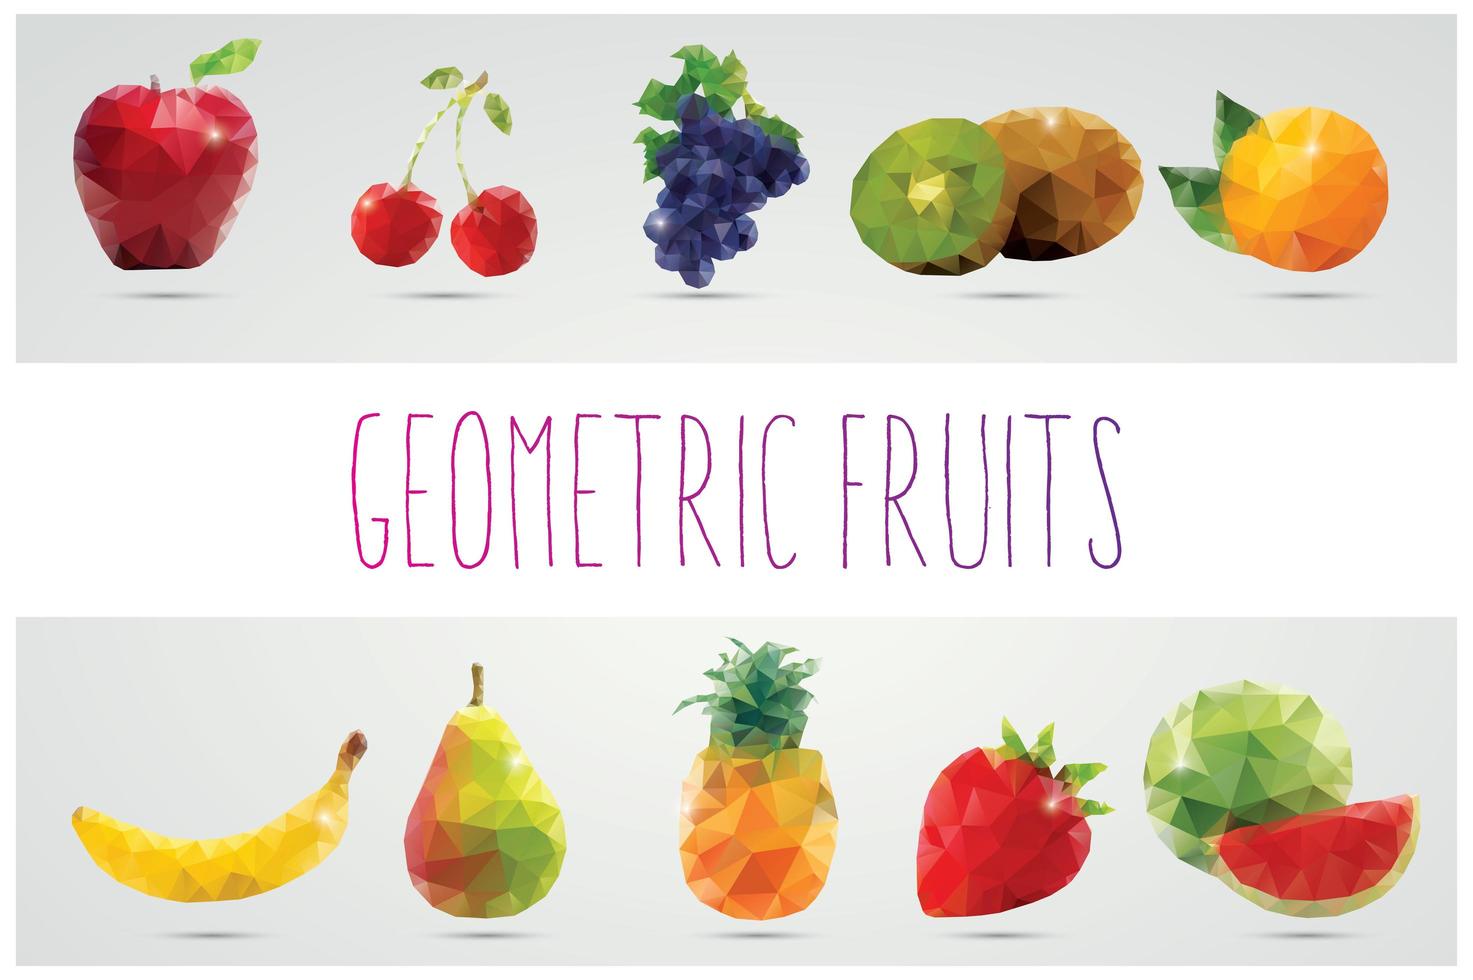 Sammlung geometrischer polygonaler Früchte vektor